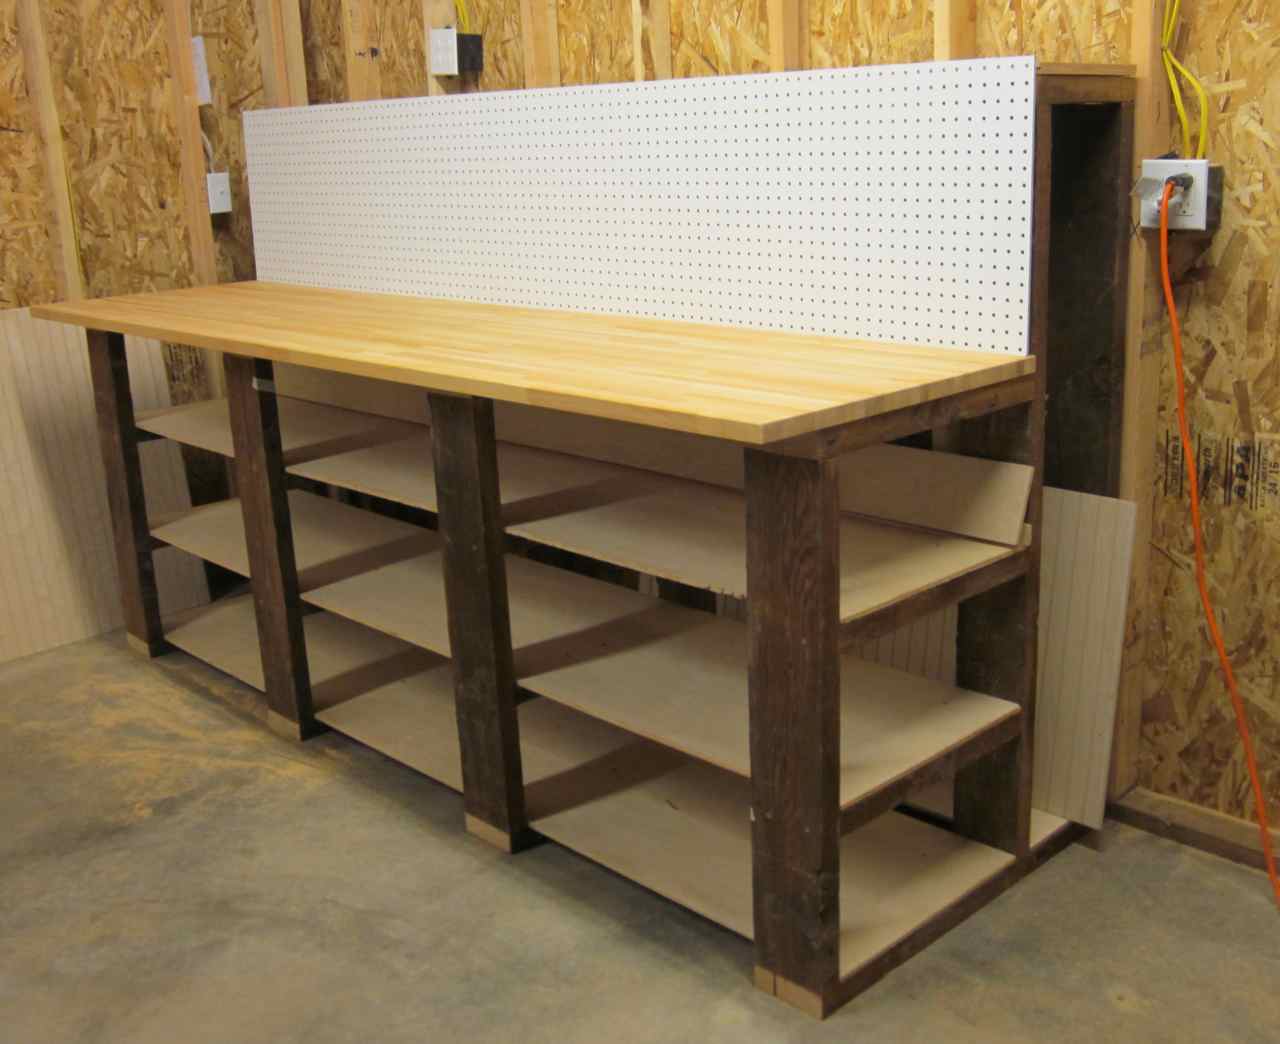 Garage Wood Workbench Plans